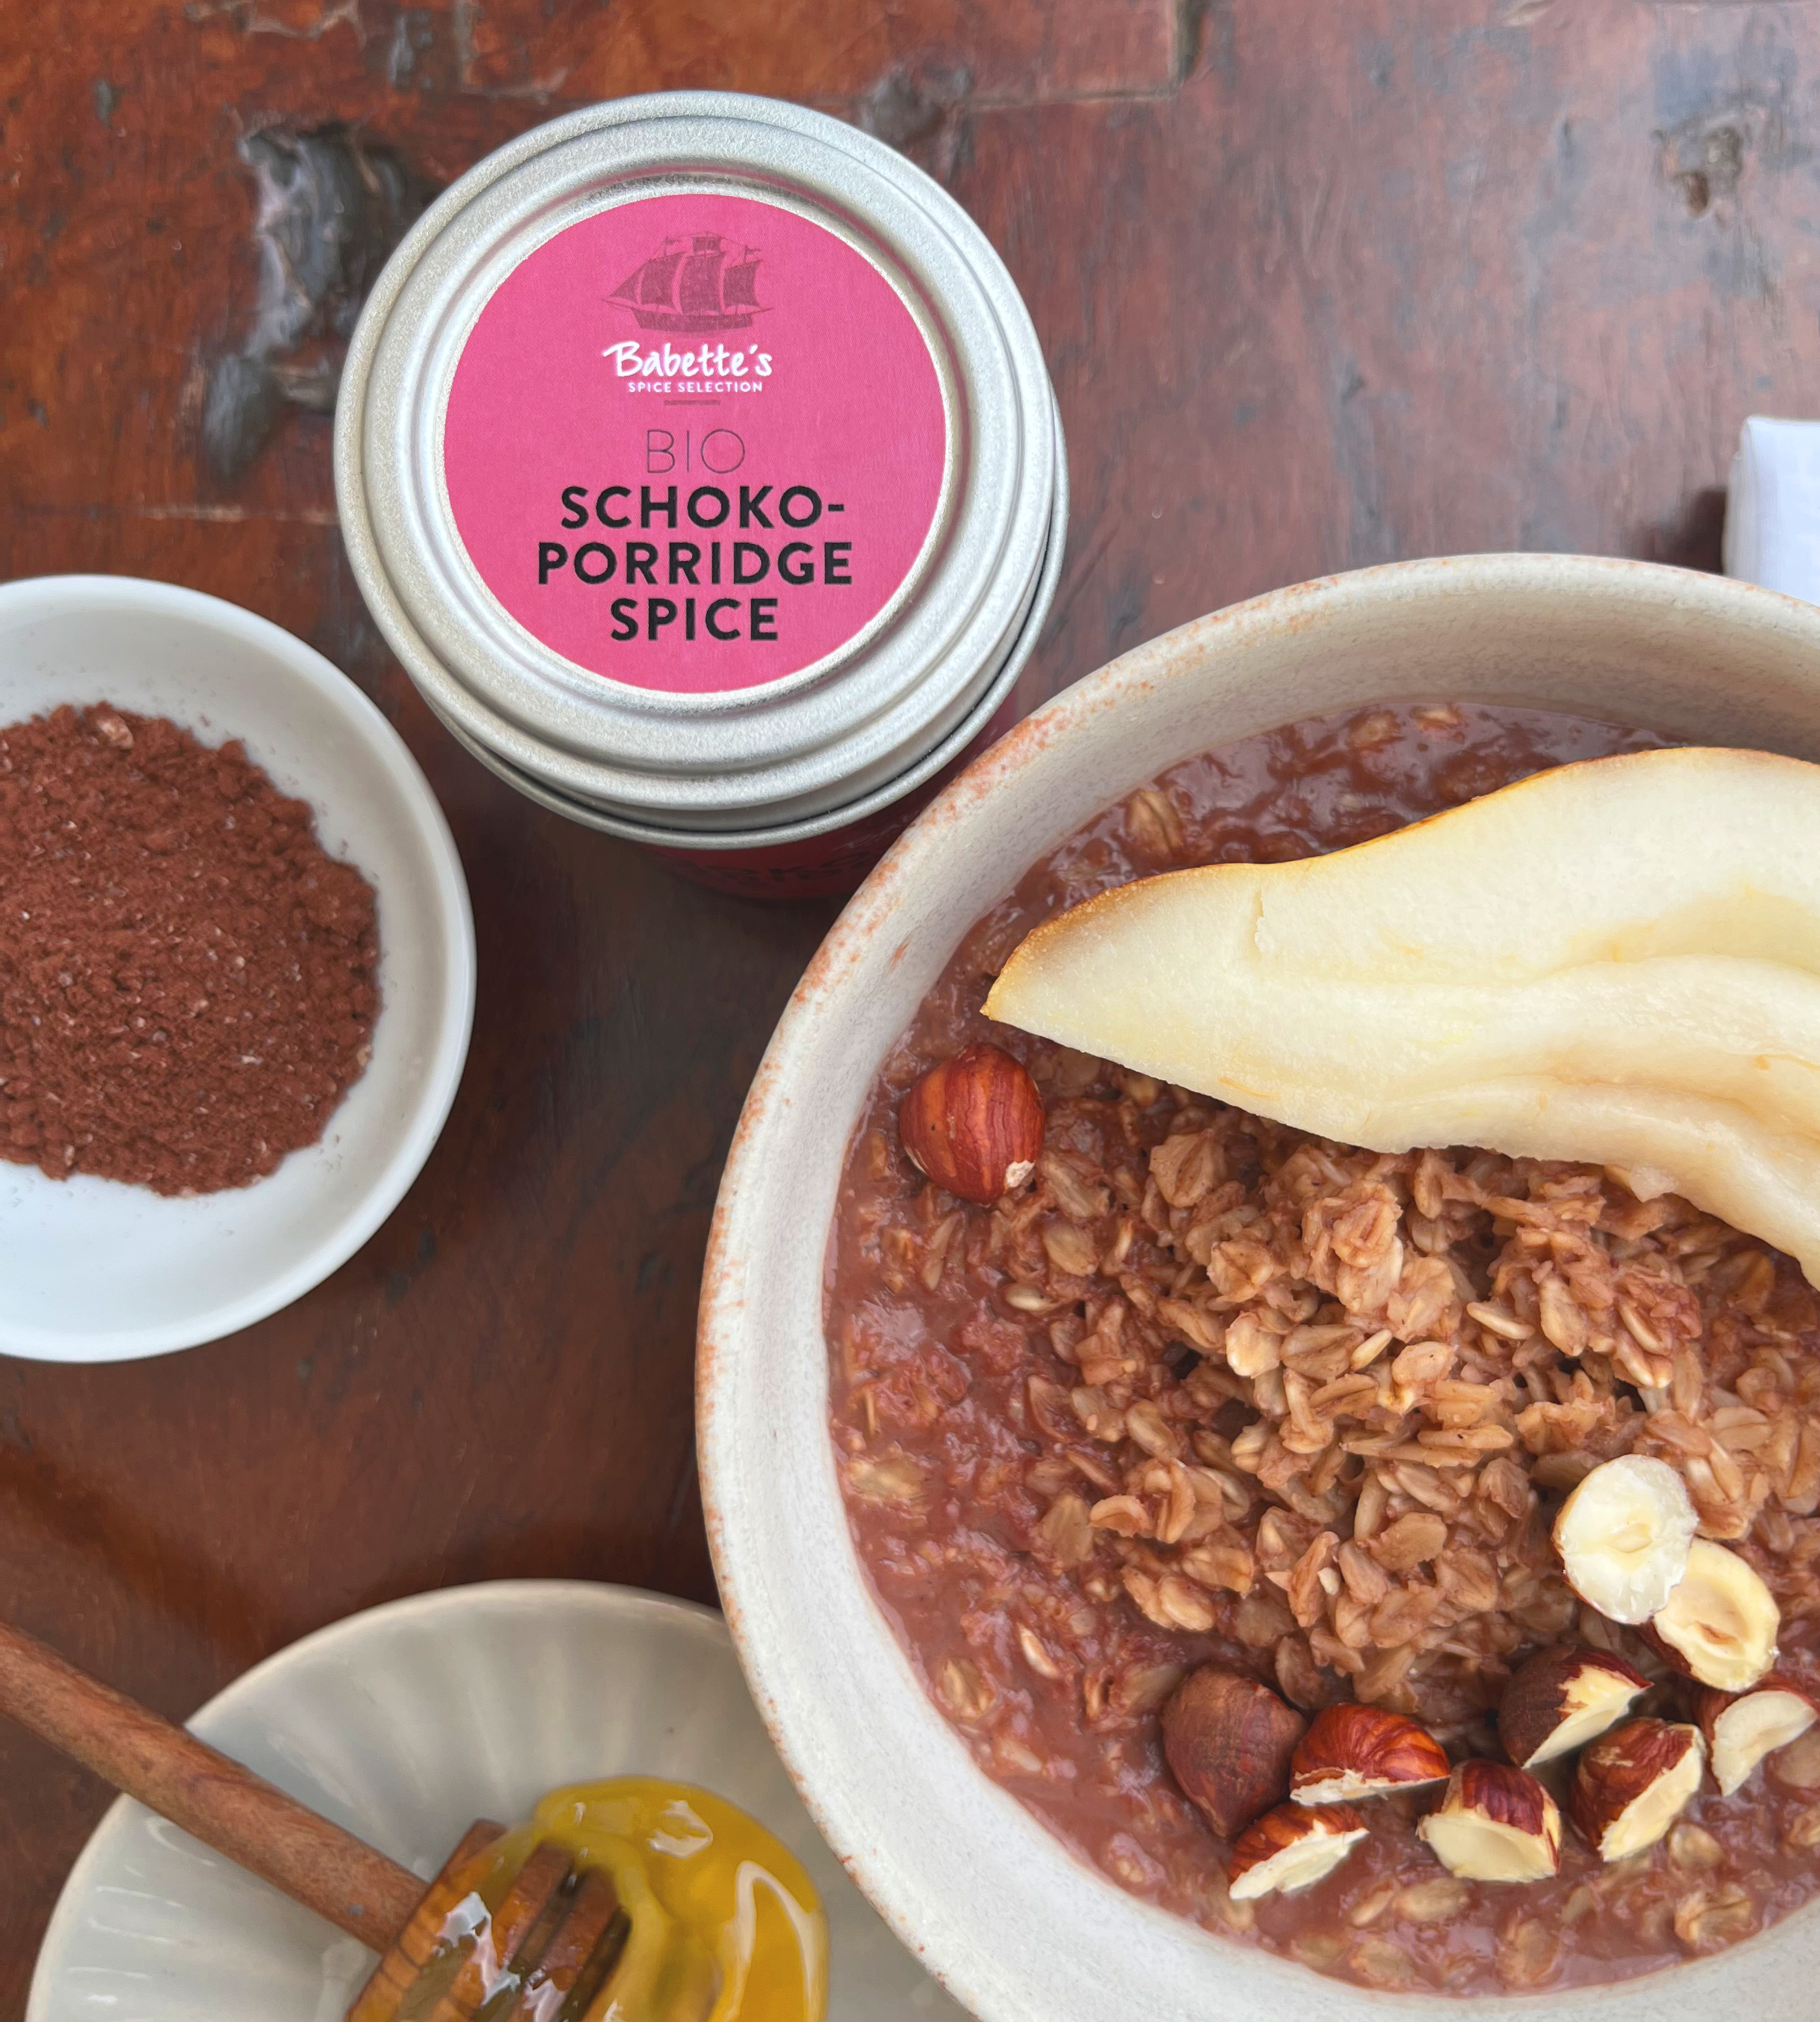 BIO Schoko-Porridge Spice